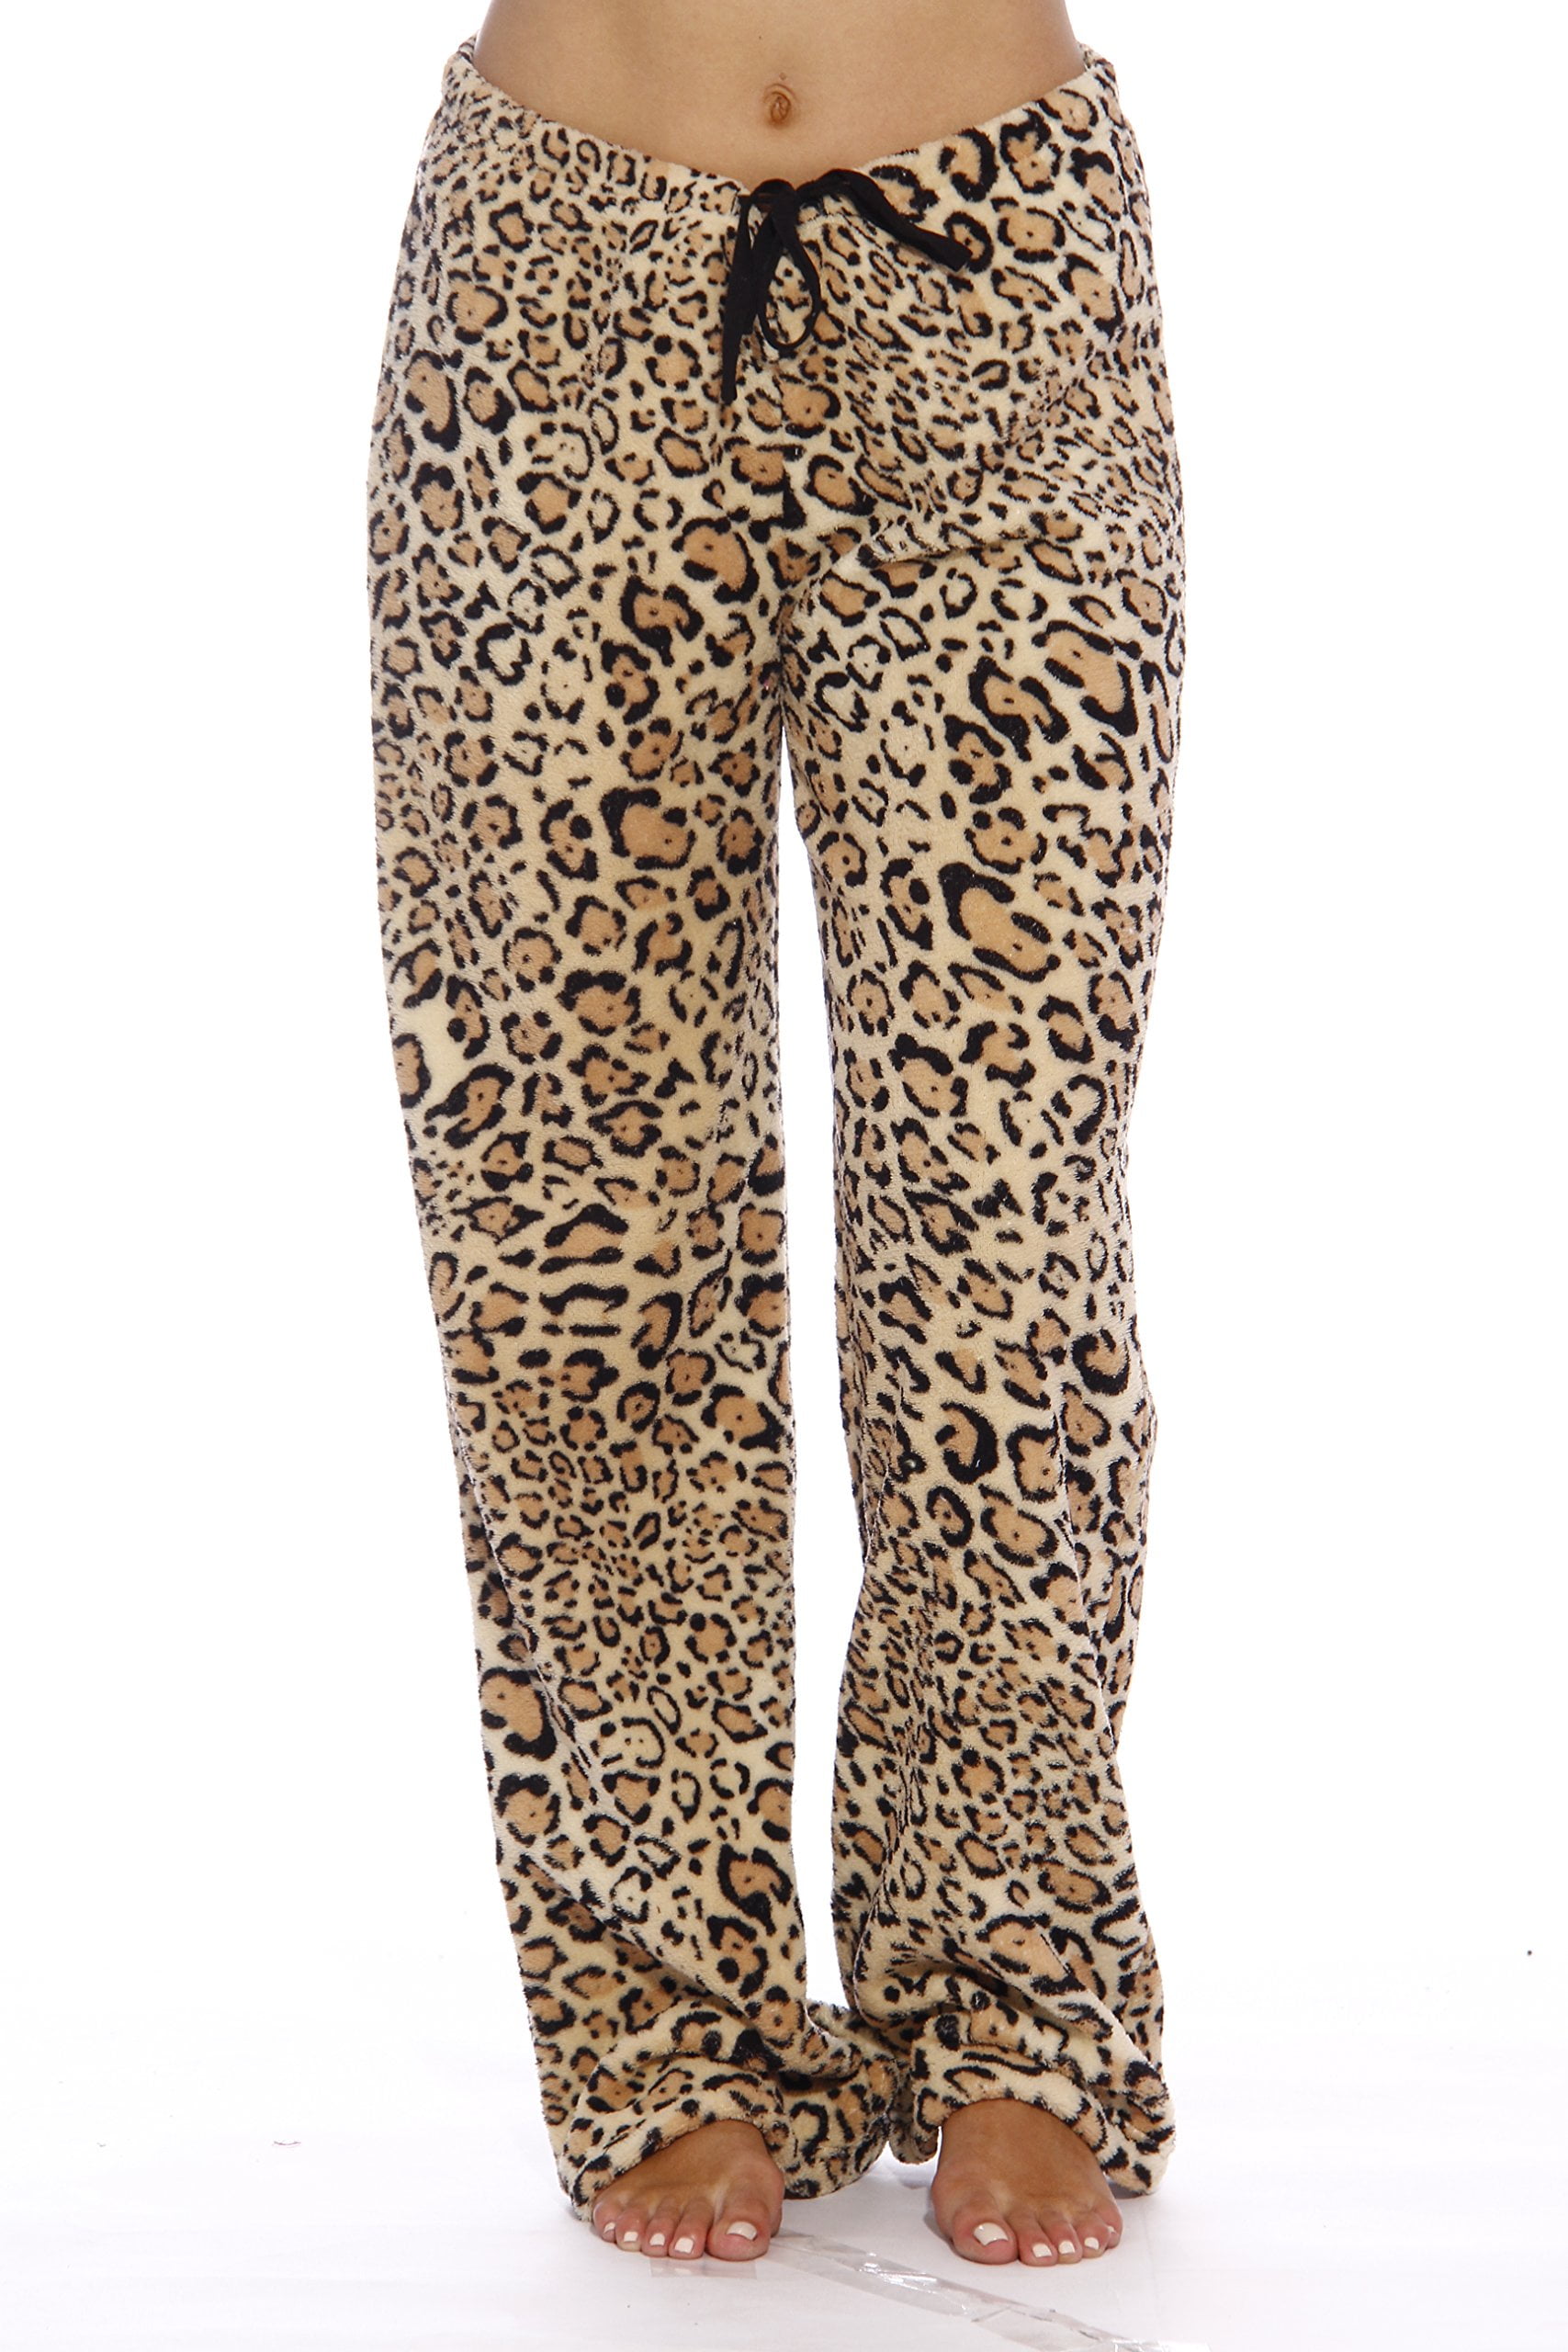 vvfelixl Women's Pajama Pants Fashion Print Sleepwear Lounge Pajama Bottoms Multicolor XS-XL 